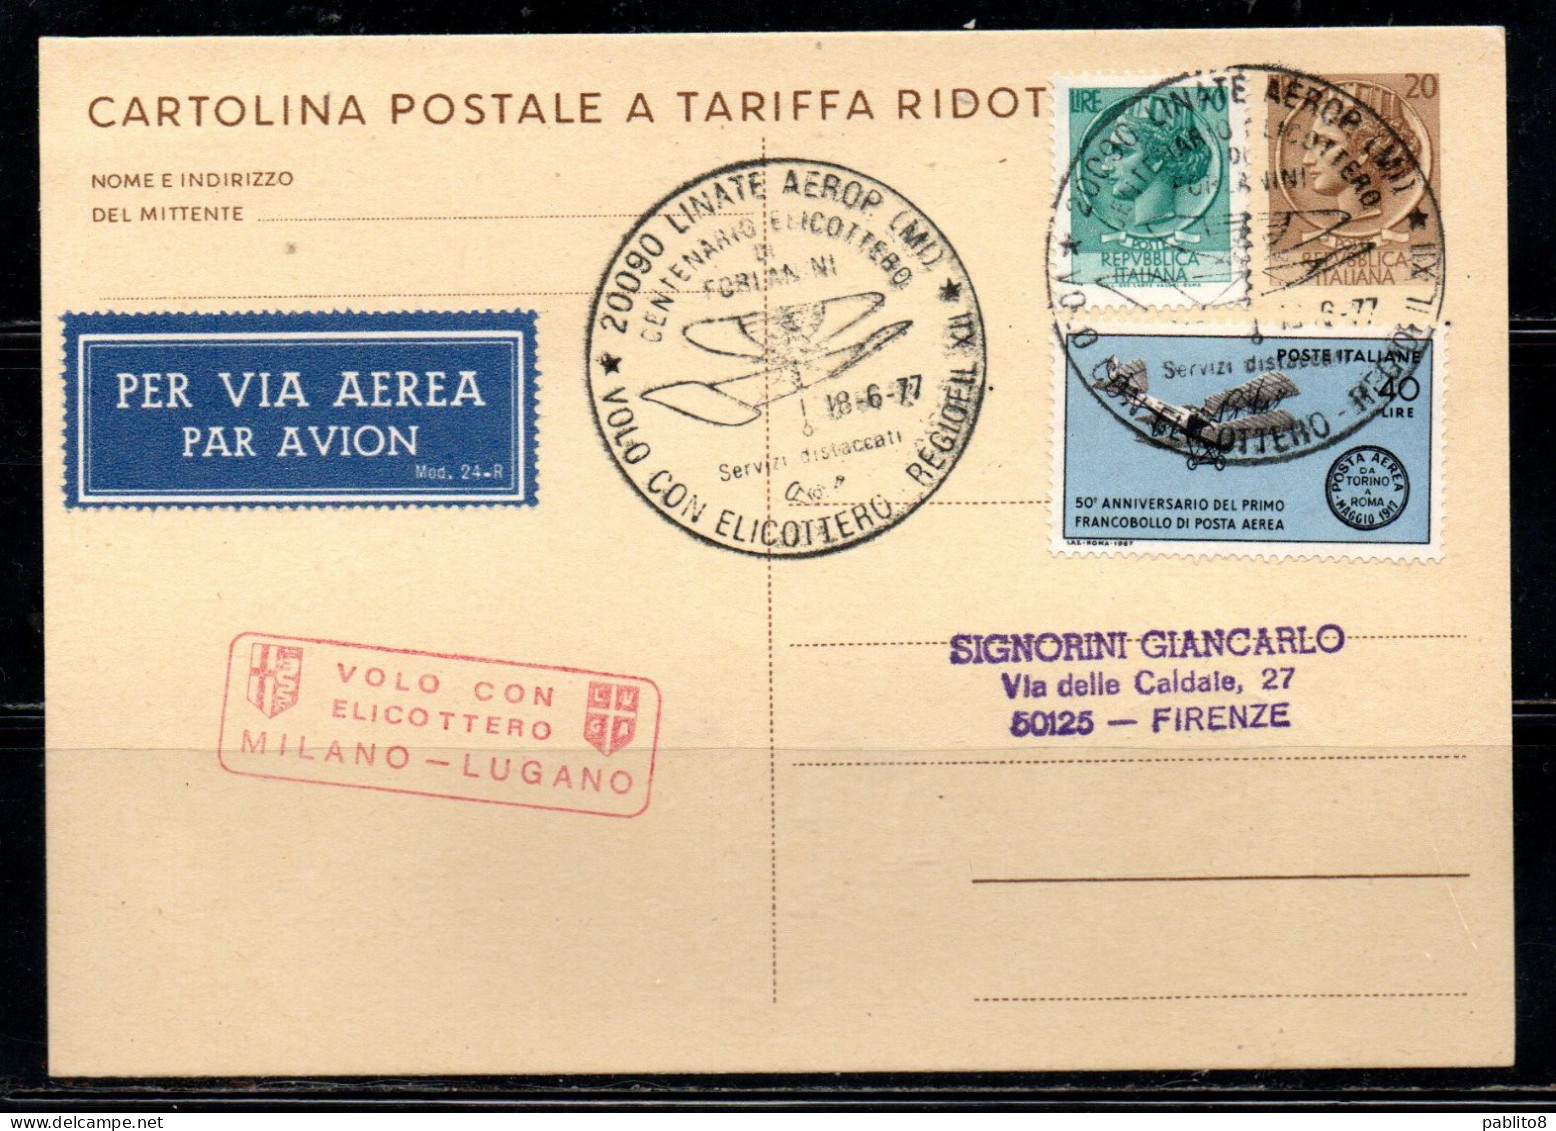 ITALIA REPUBBLICA ITALY REPUBLIC CARTOLINA POSTALE 18-6-1977 VOLO CON ELICOTTERO MILANO - LUGANO FORLANINI VIAGGIATA - Entiers Postaux